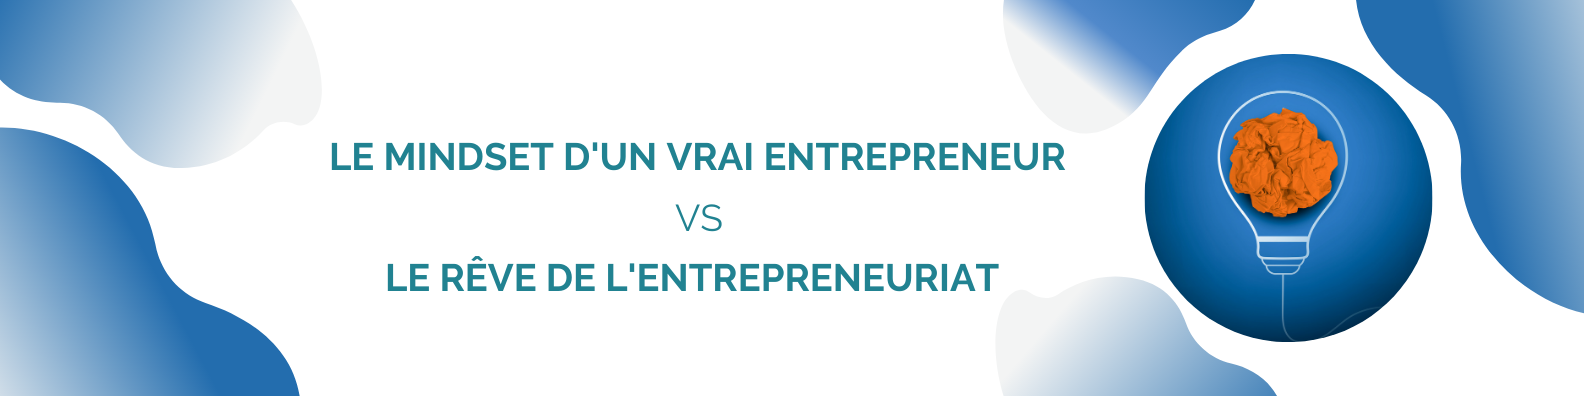 Le Mindset d'un Vrai Entrepreneur vs le Rêve de l'Entrepreneuriat